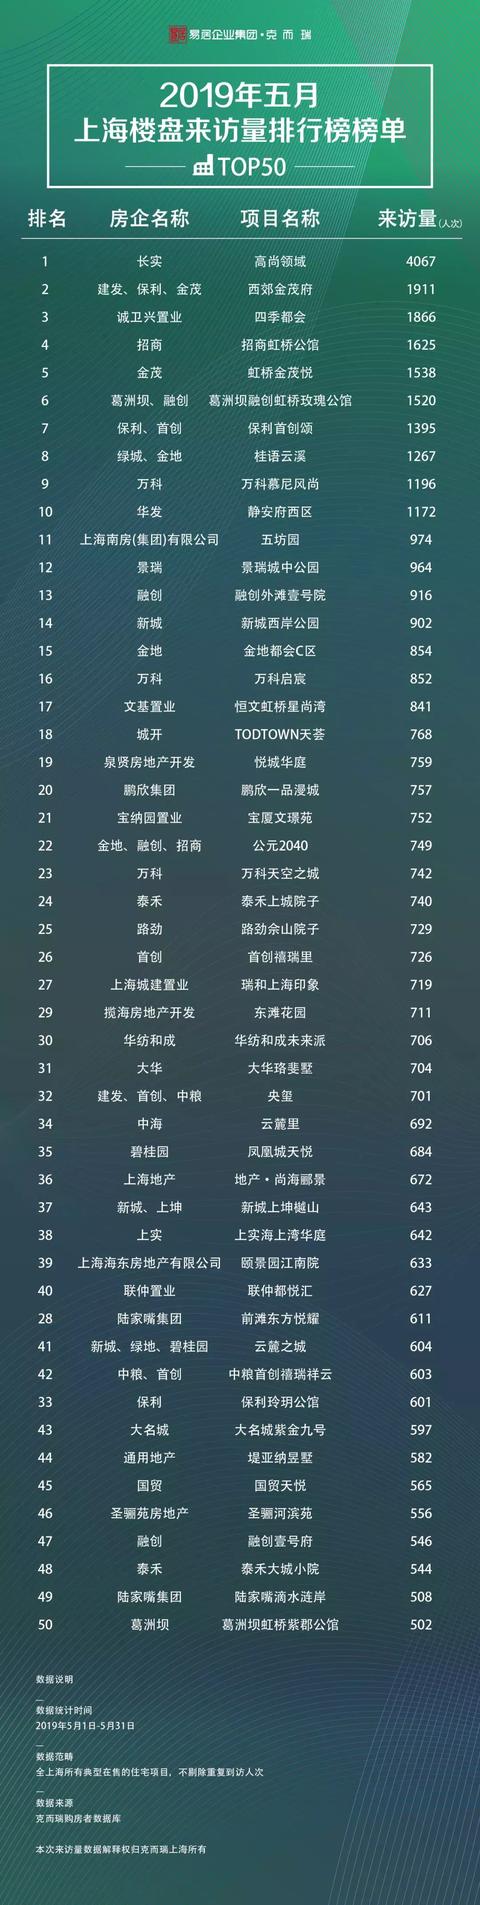 「重磅发布」2019年五月上海楼盘来访量TOP50排行榜发布